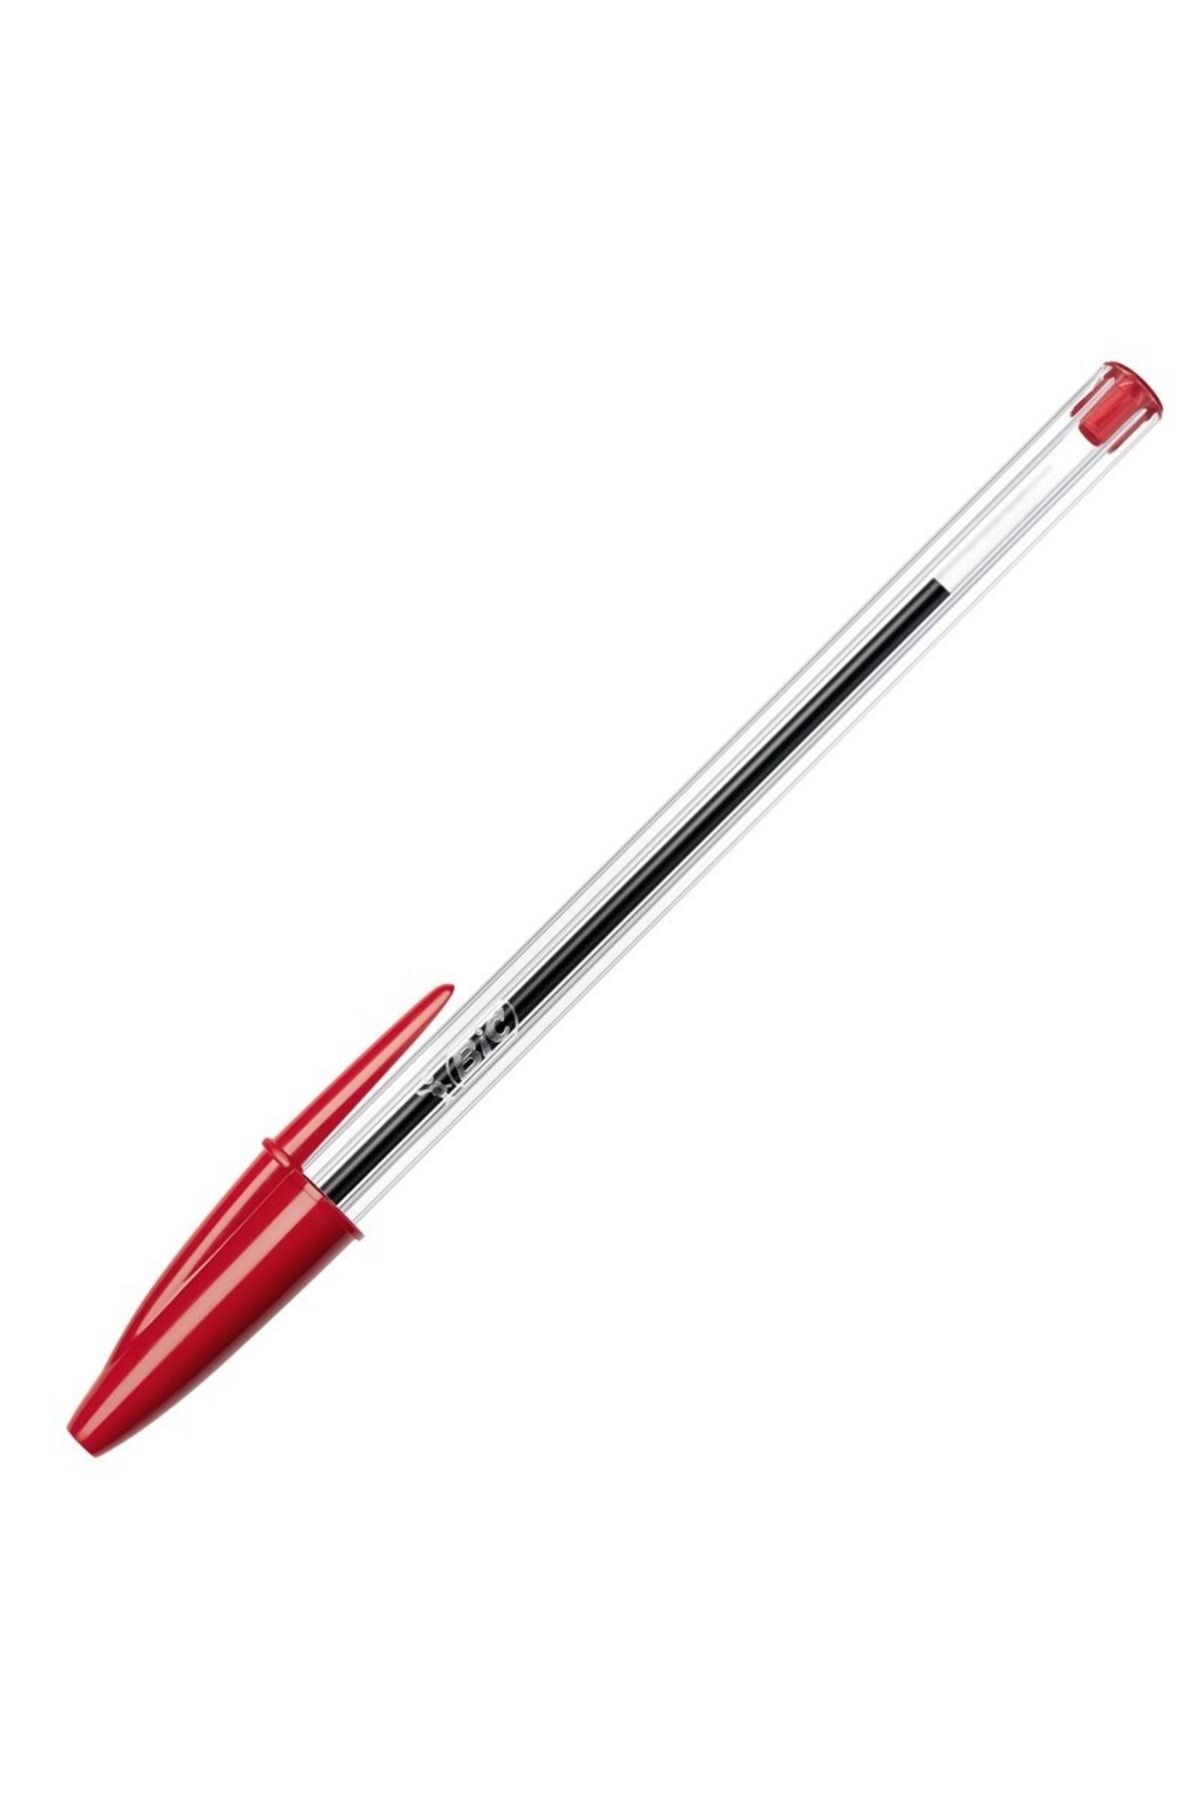 Bic Tükenmez Kalem Crıstal Med Kırmızı 50lı 847899